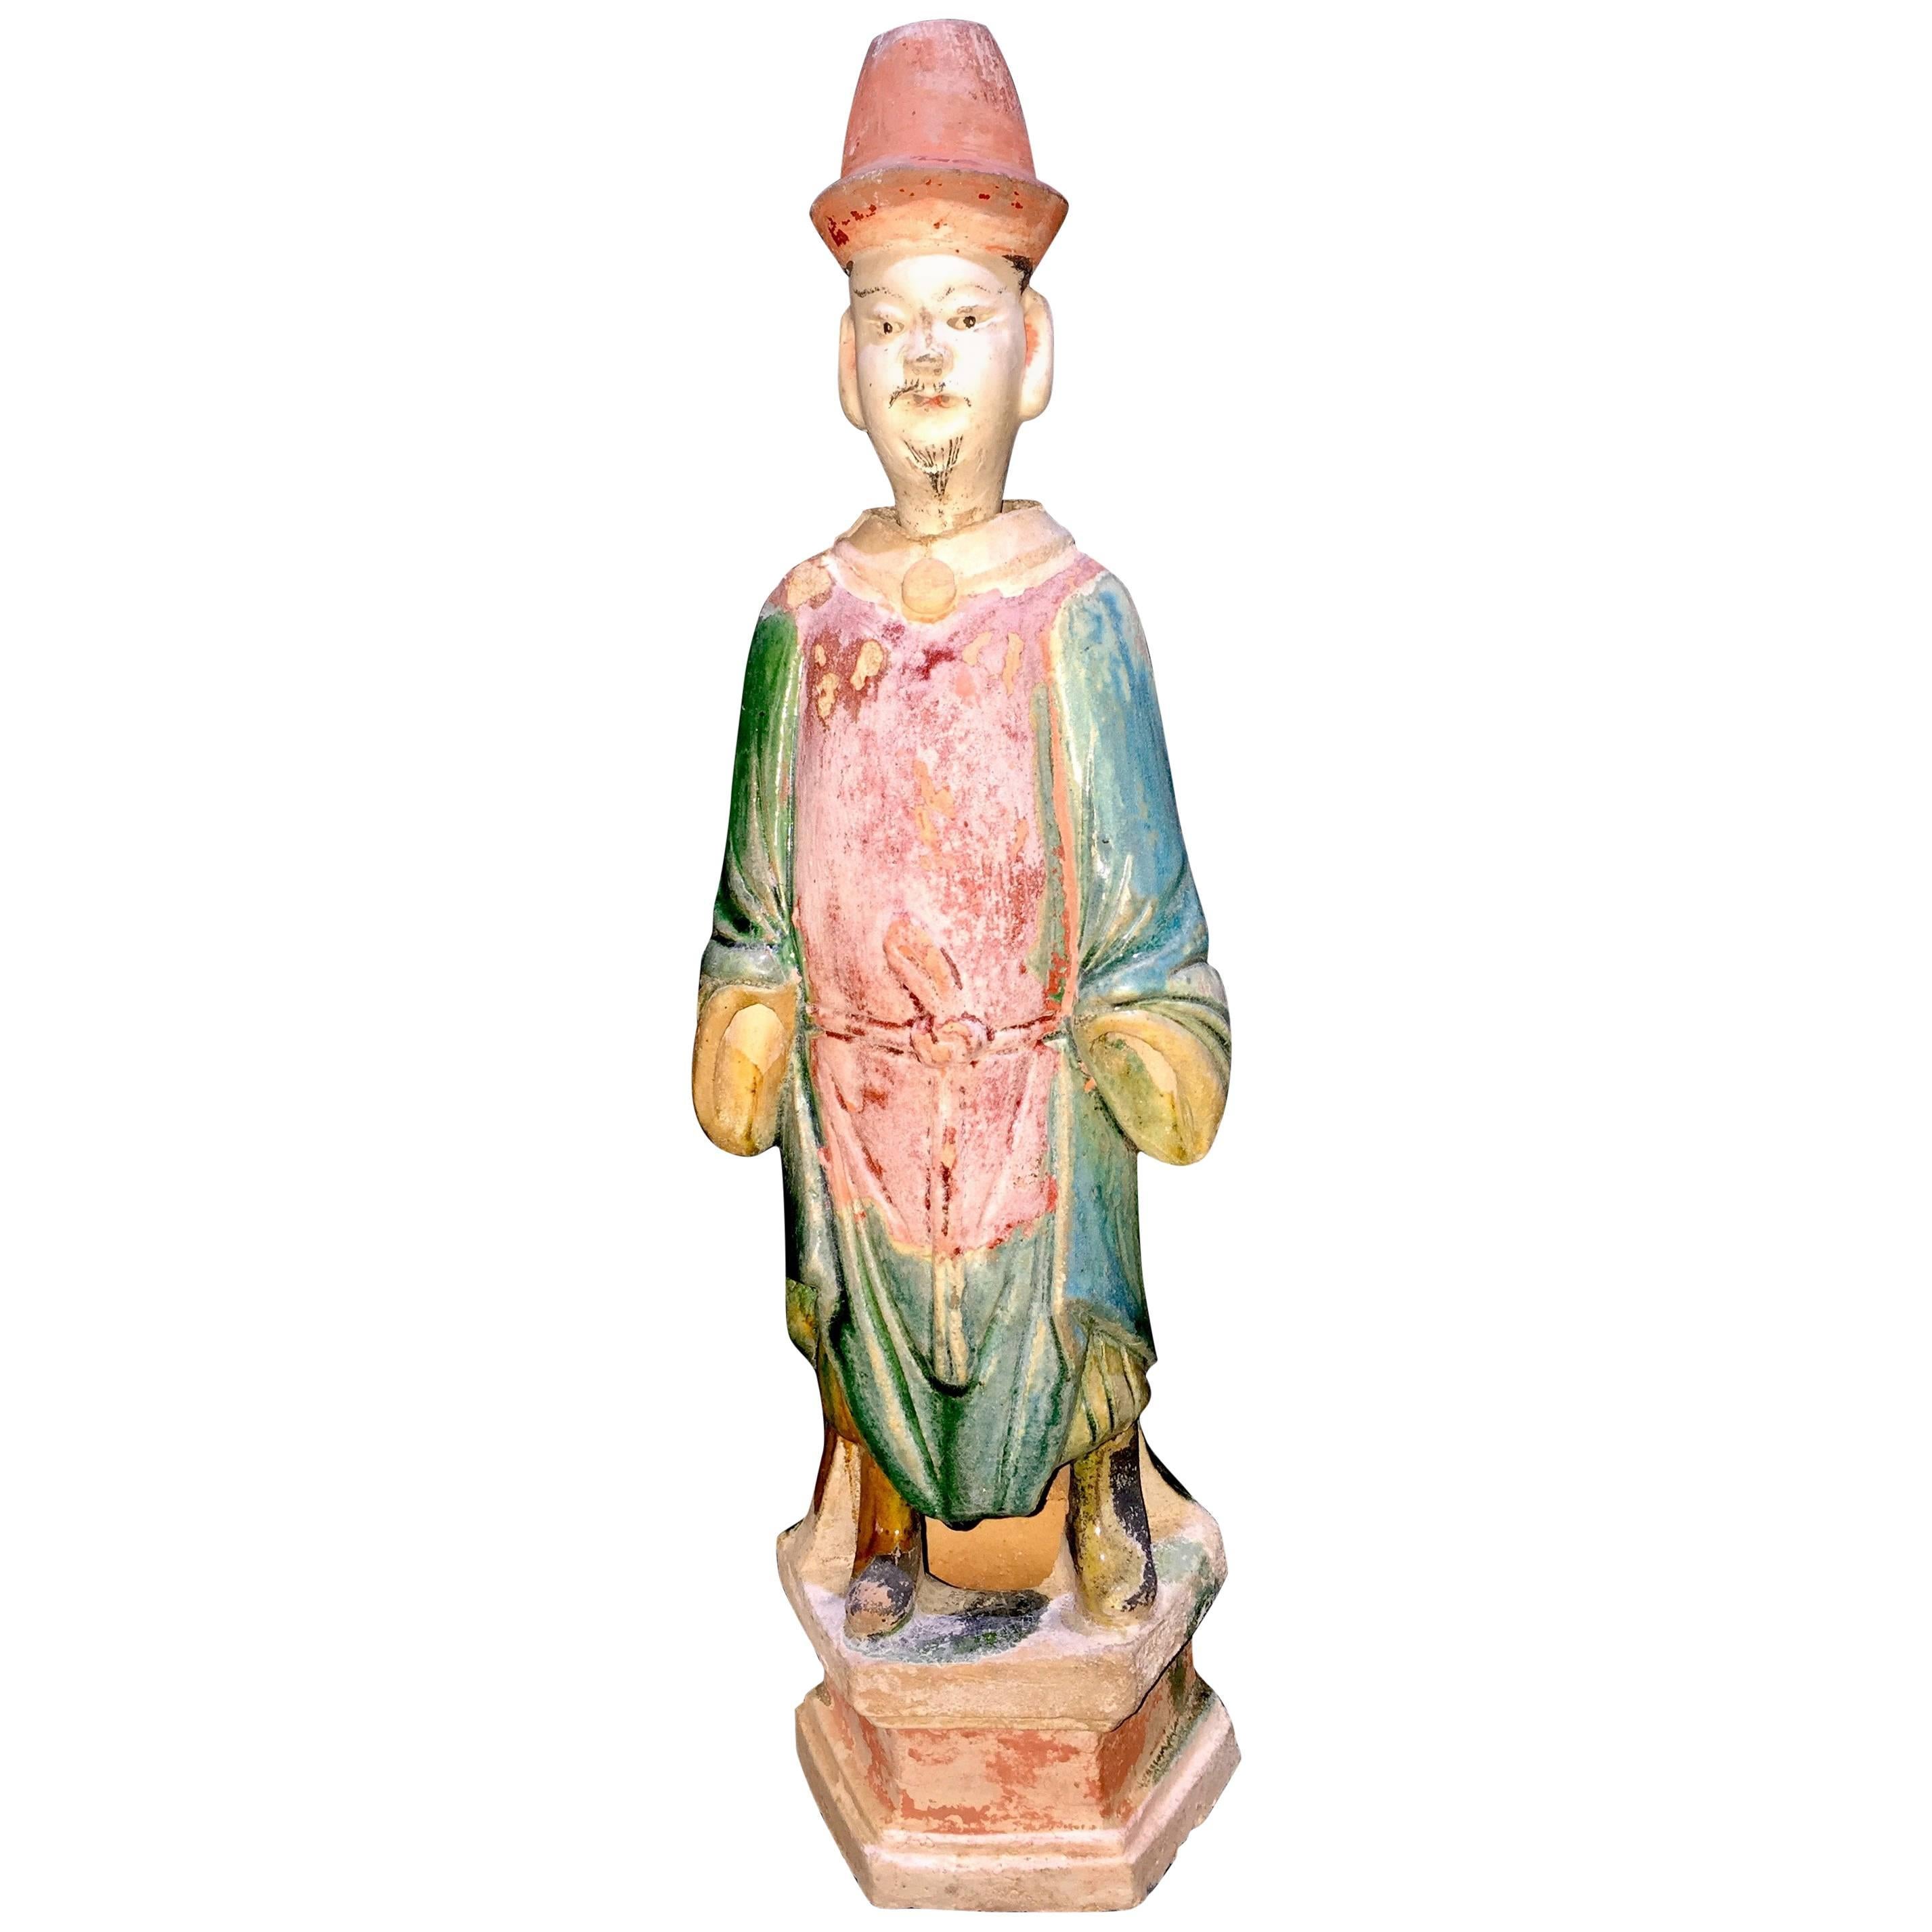 Elegant Ming Dynasty Court Attendant, Glazed Terracotta - China '1368-1644 AD'